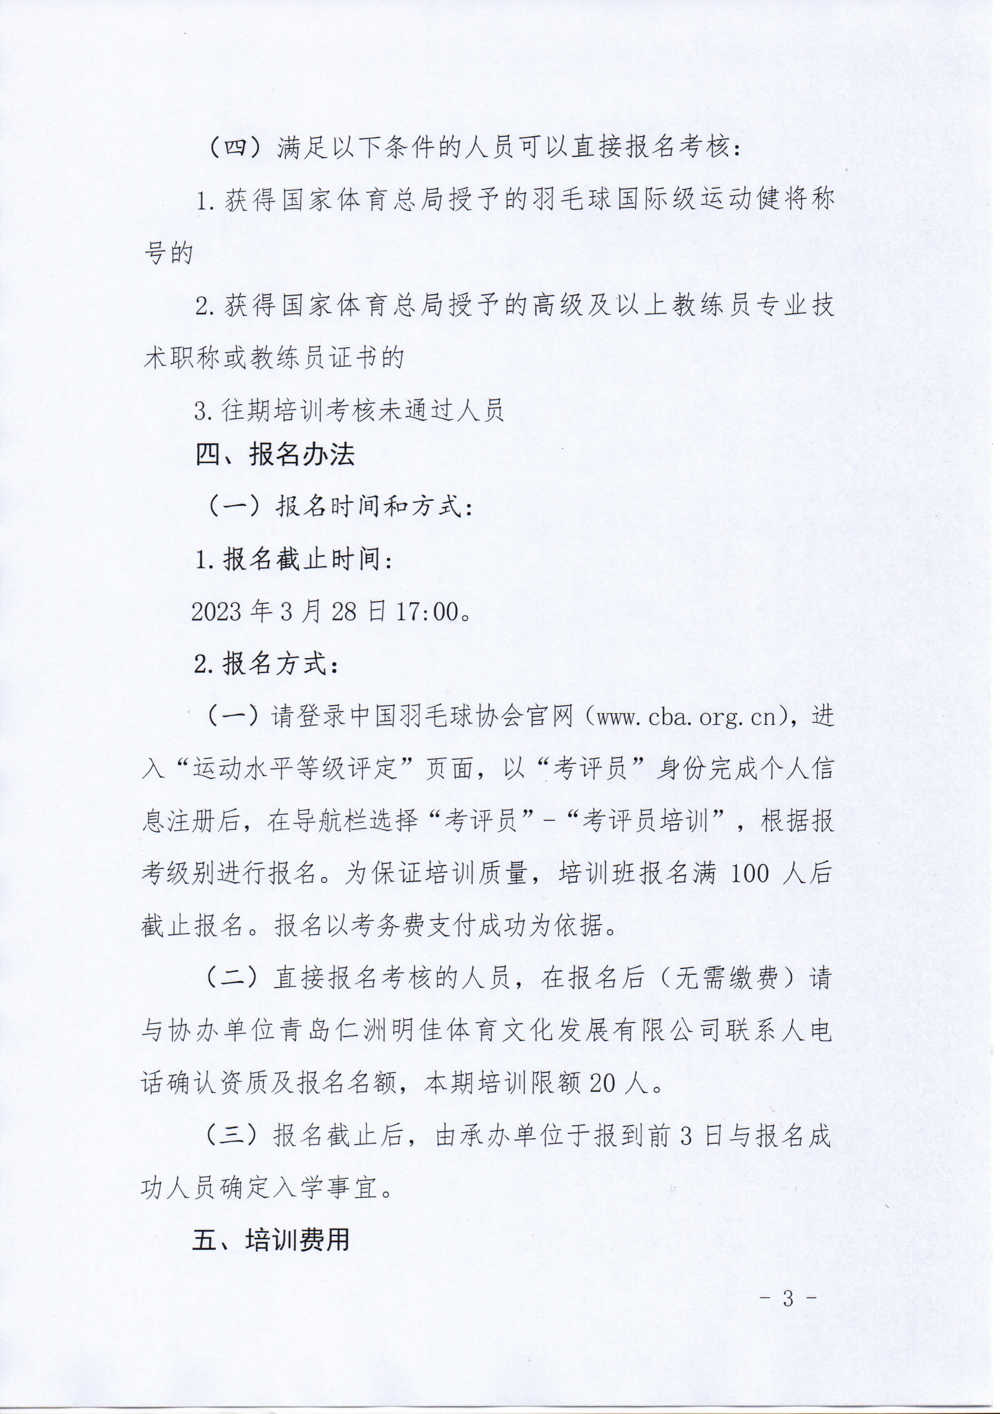 中国羽毛球协会关于举办2023年第一期羽毛球运动水平等级考评员培训班的通知-20230321_页面_3